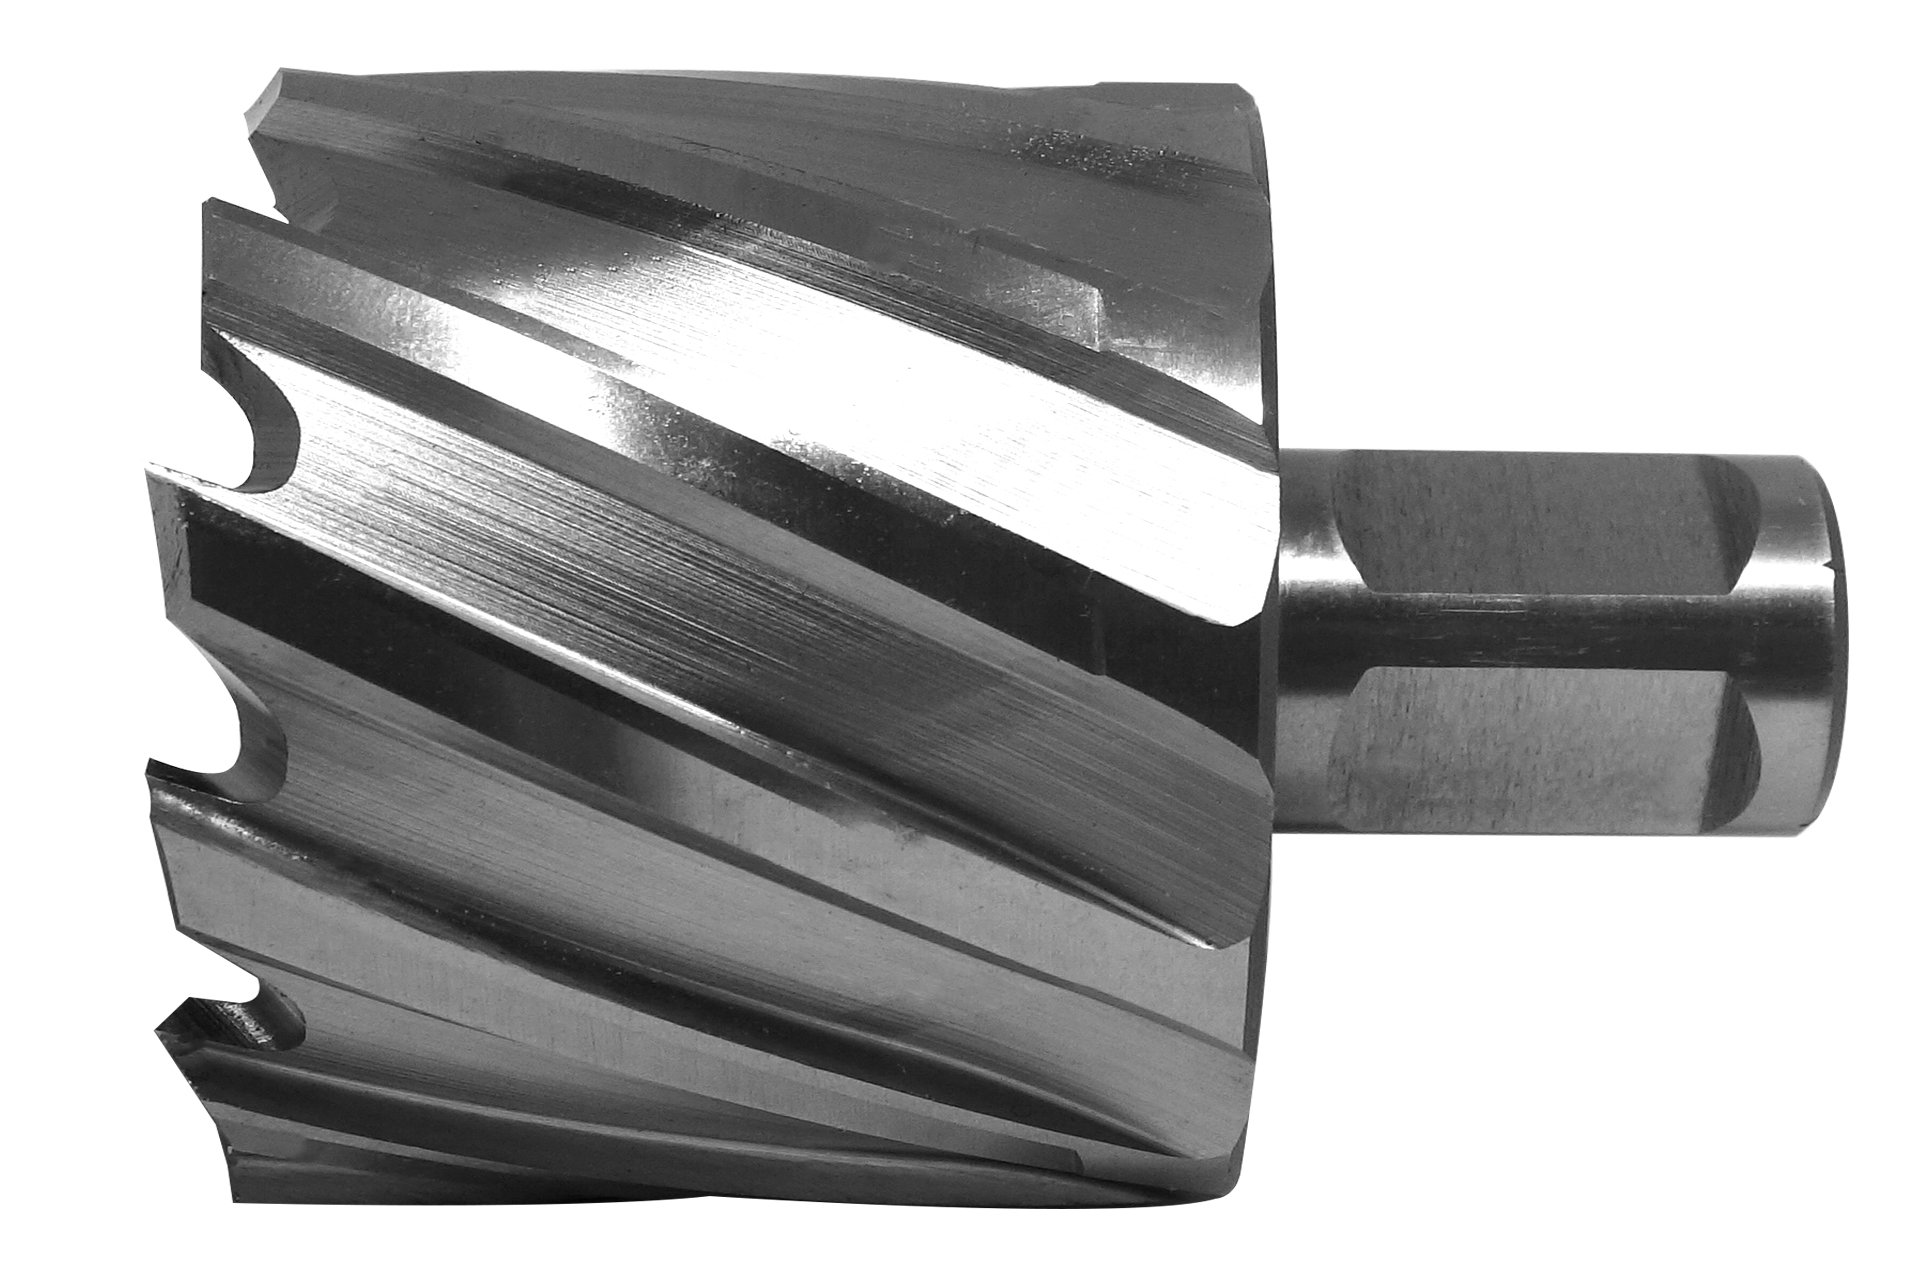 HSS-Kernbohrer mit Bohrtiefe 30 mm, Ø 50 mm